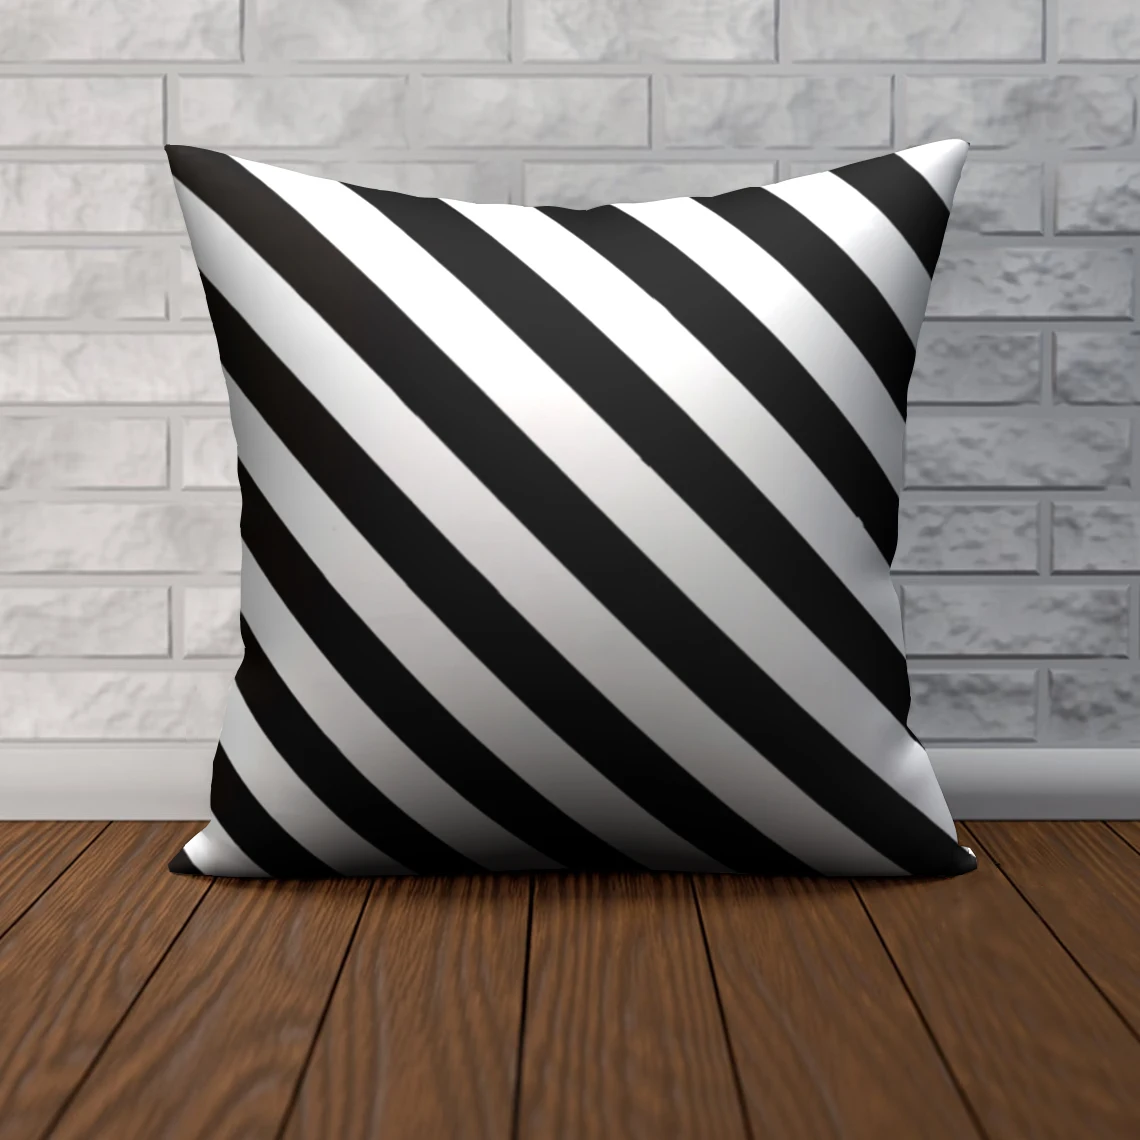 

Geometric Black White Lines Pillowcase Decorative Sofa Cushion Case Bed Throw Pillow Cover Home Decor Car Cushion Cover 45x45